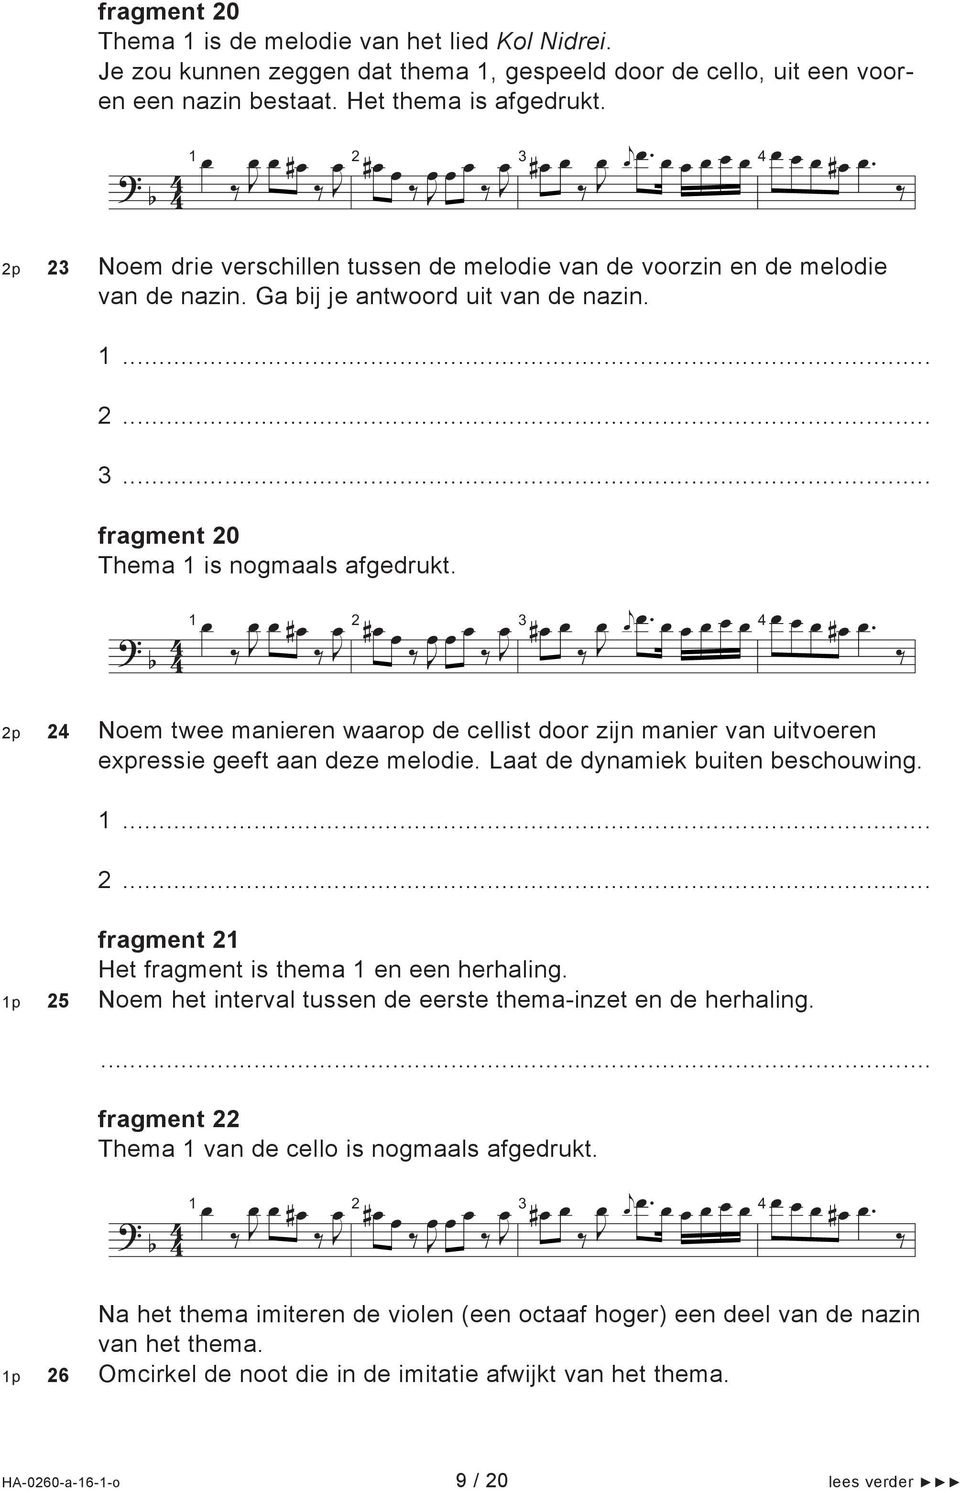 . p Noem twee manieren waarop de cellist door zin manier van uitvoeren expressie geeft aan deze melodie. Laat de dynamiek buiten beschouwing.... fragment 1 Het fragment is thema 1 en een herhaling.